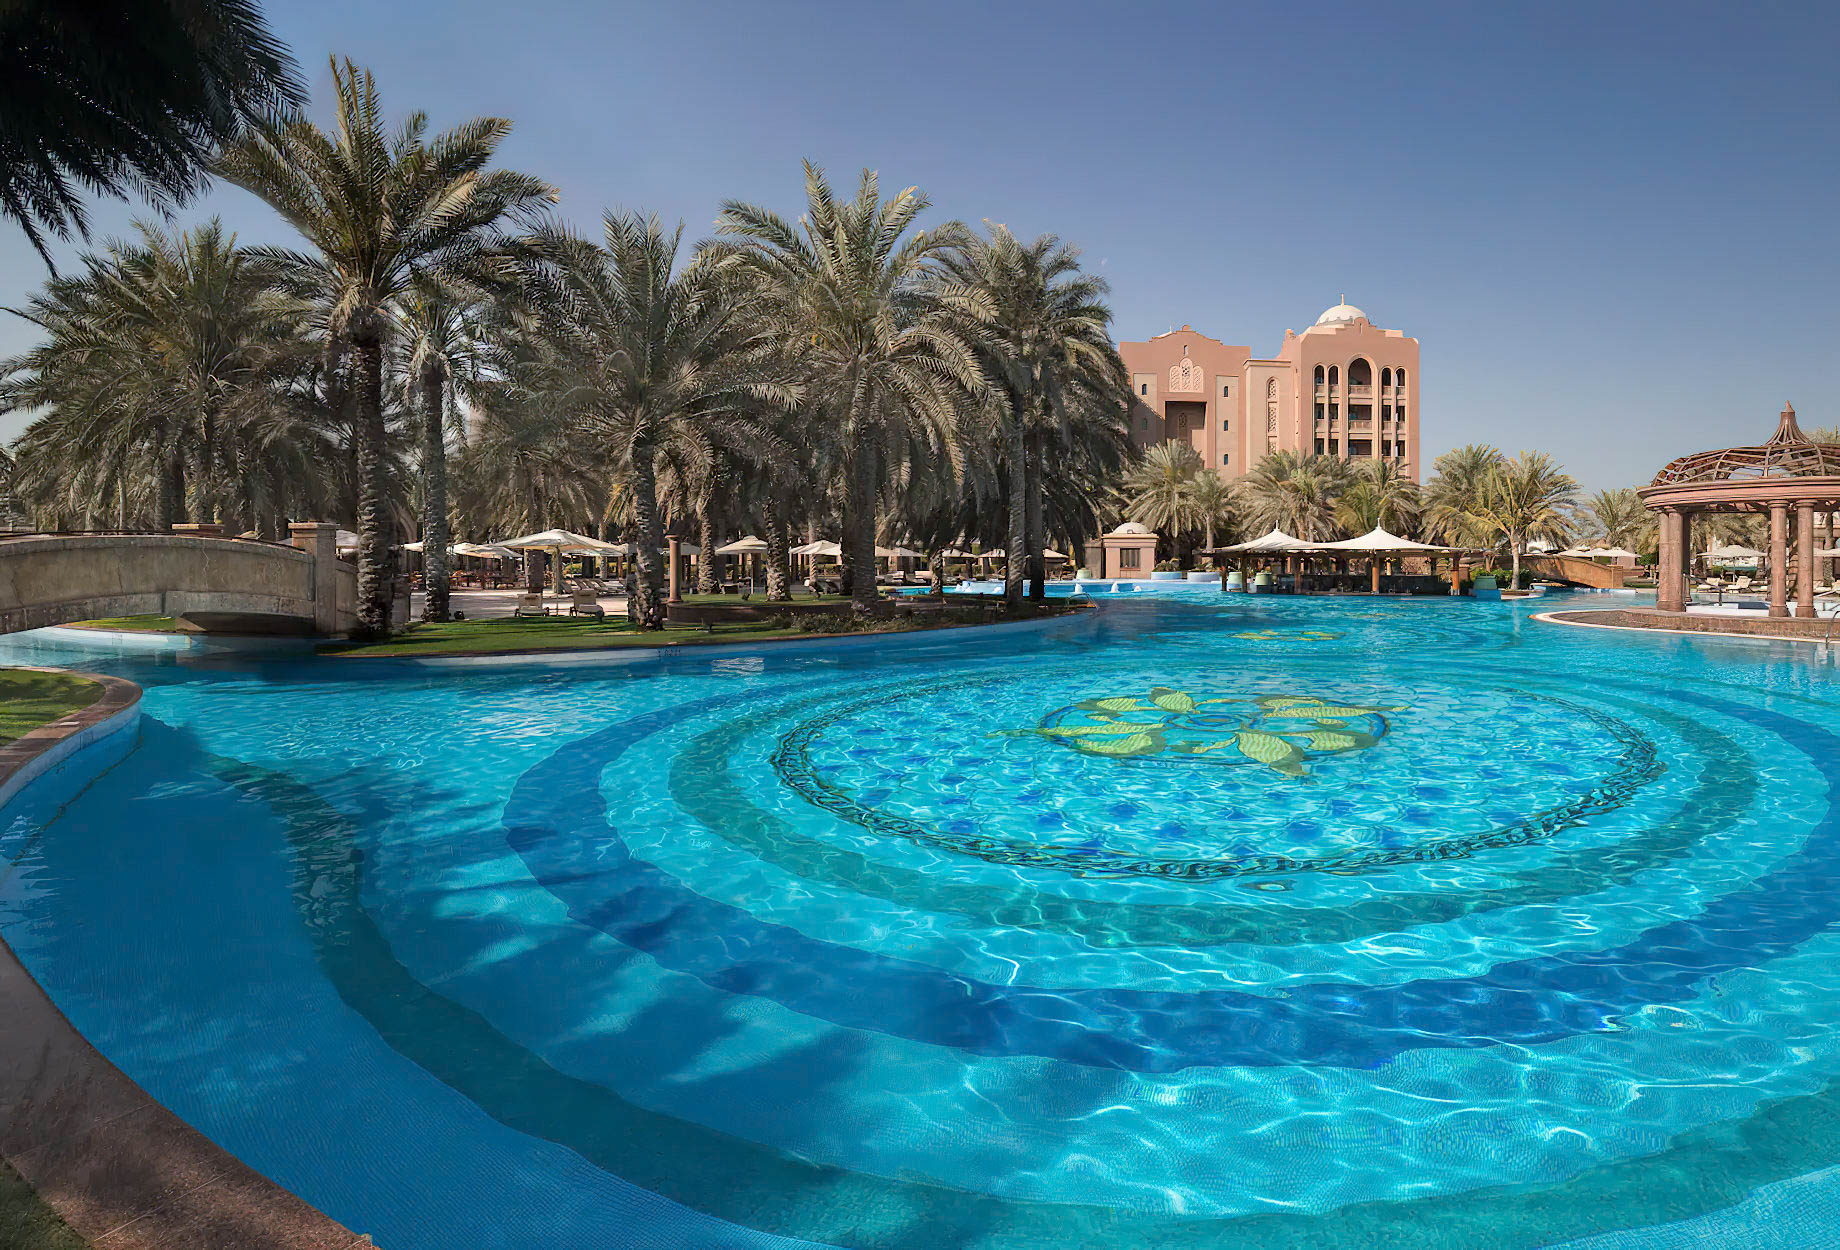 Emirates Palace Abu Dhabi Hotel – Abu Dhabi, UAE – Palace Pool View